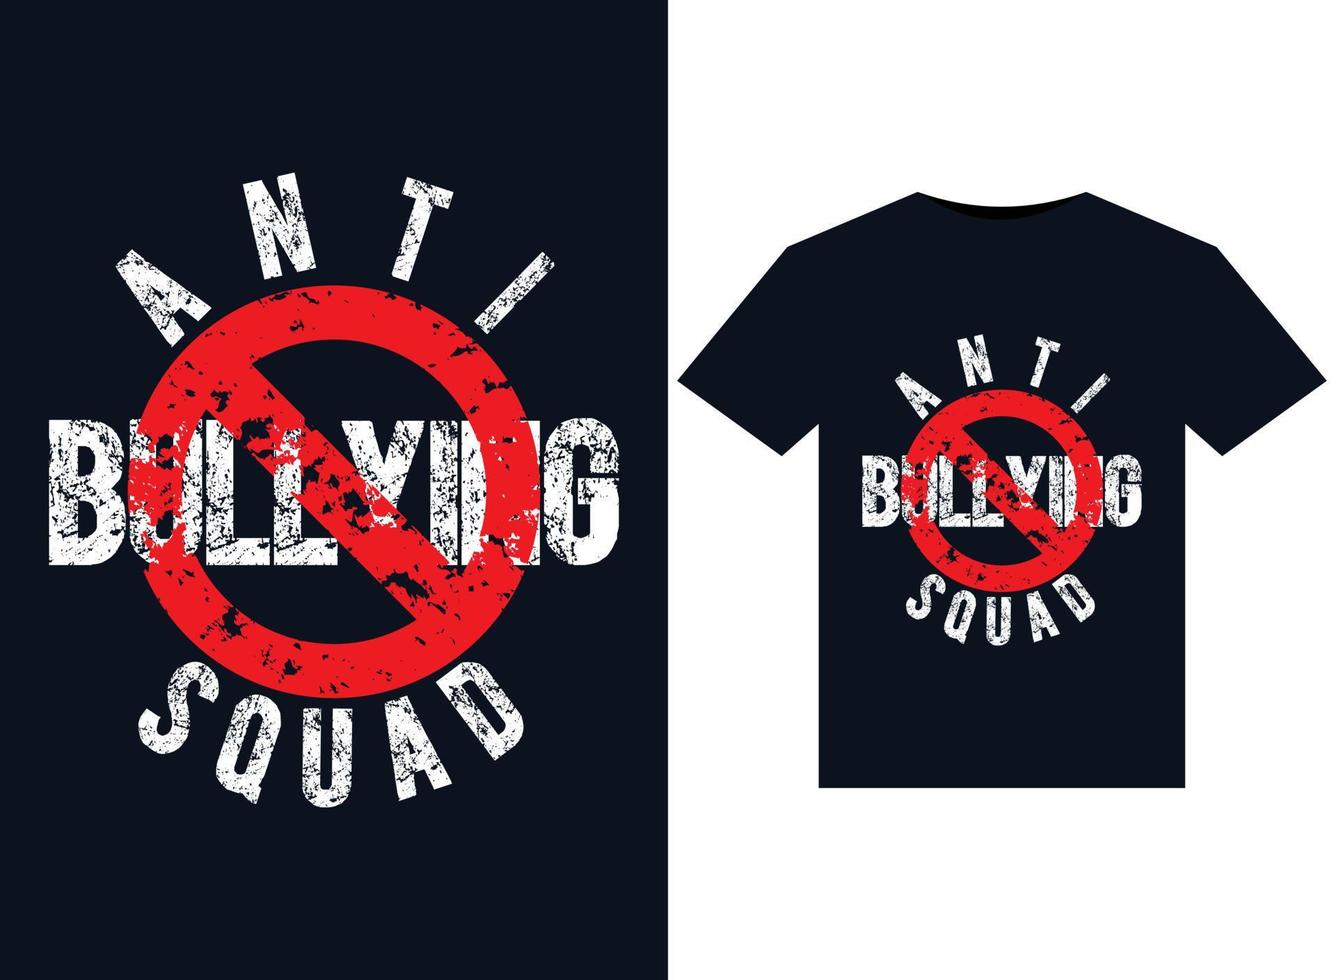 ilustrações de esquadrão antibullying para design de camisetas prontas para impressão vetor